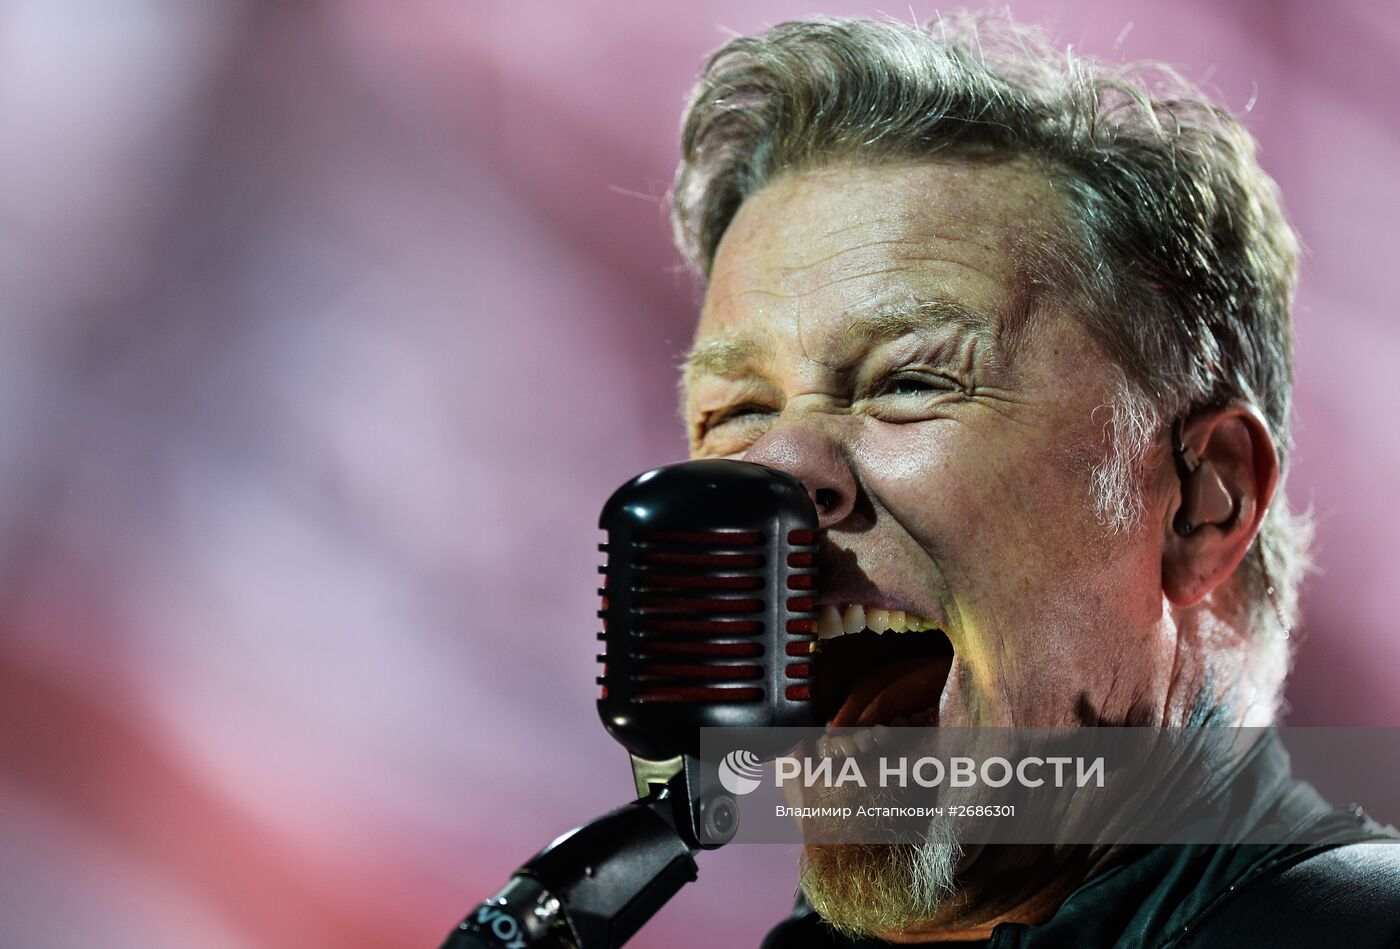 Концерт группы Metallica в Москве